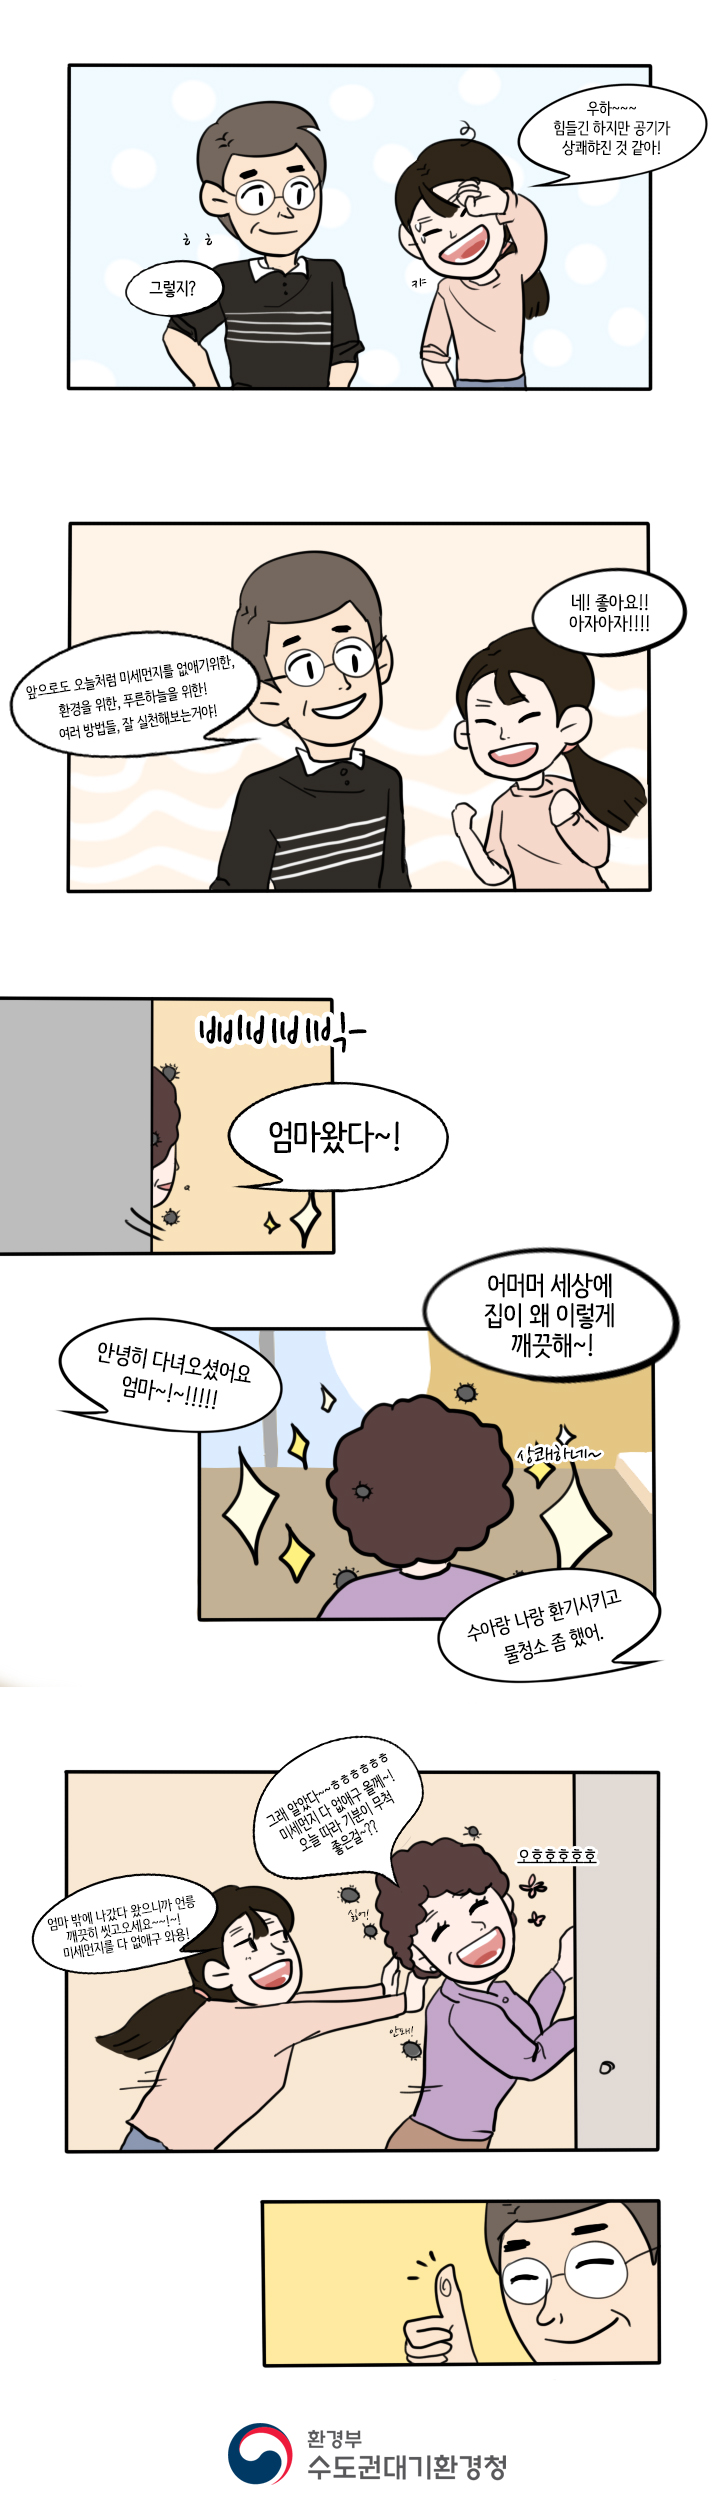 (푸른하늘 웹툰공모전 입선) 수아의 행복한하루 feat 사라져라 미세먼지5